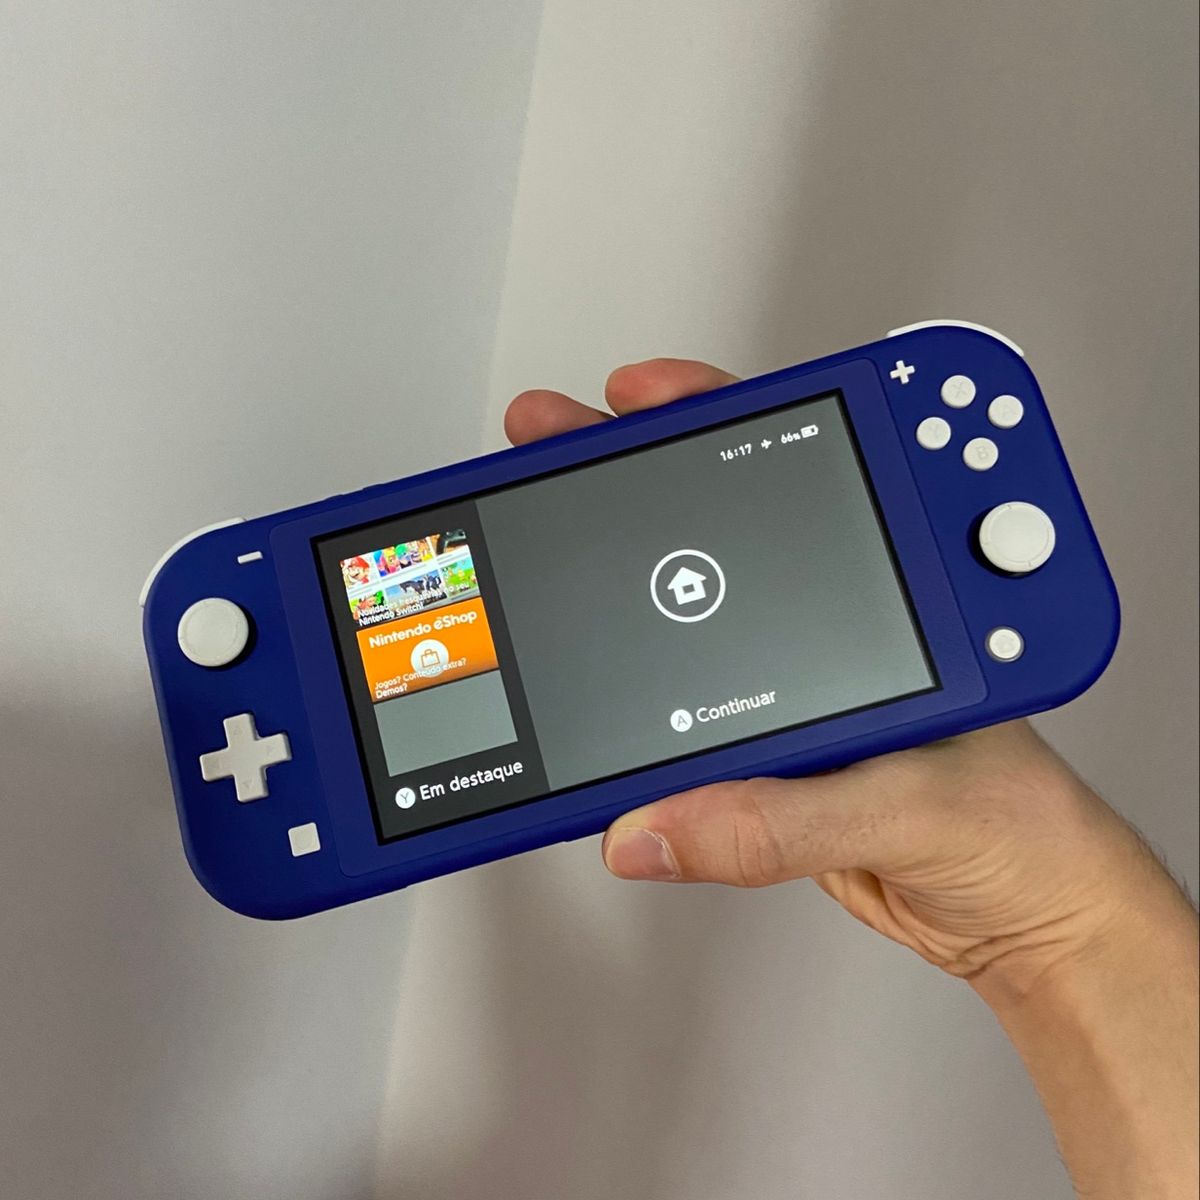 Nintendo Switch Usado com 5 Jogos | Brinquedo Nintendo Usado 90290354 |  enjoei